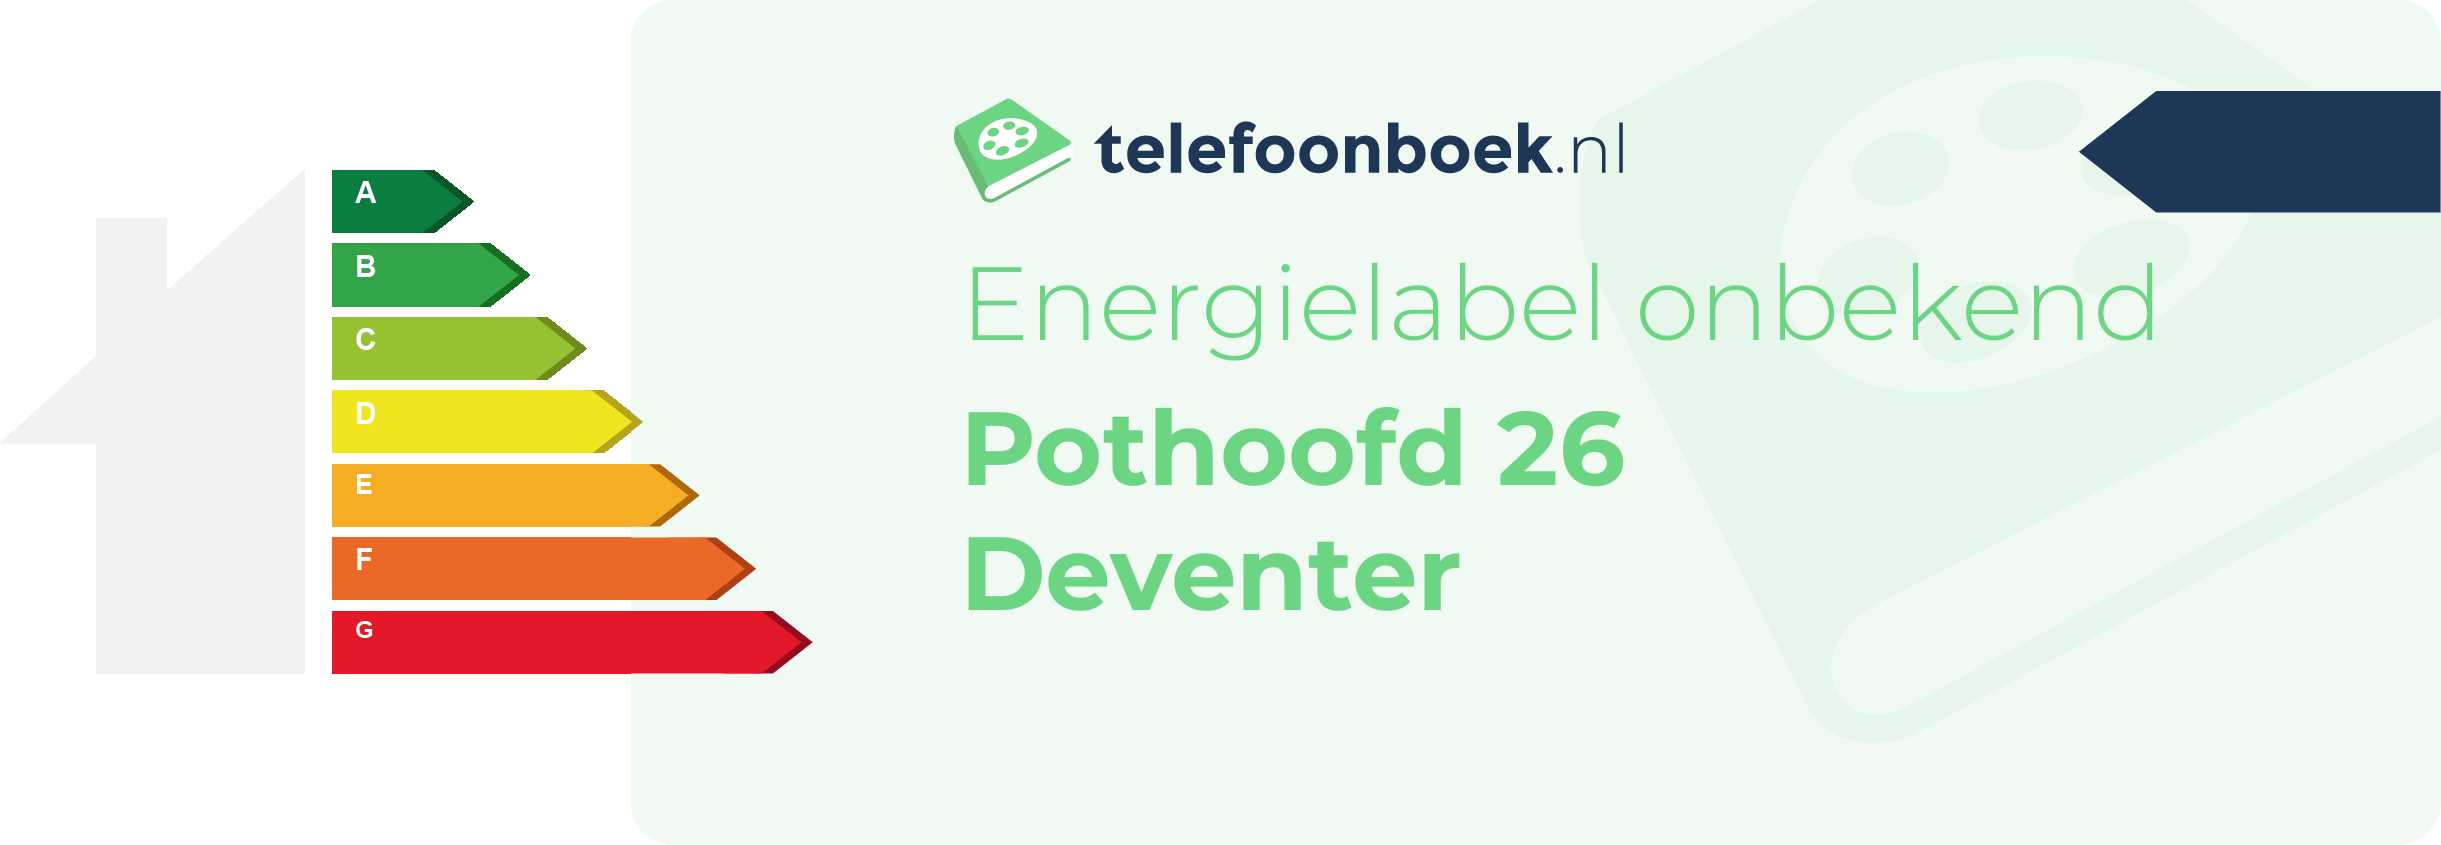 Energielabel Pothoofd 26 Deventer